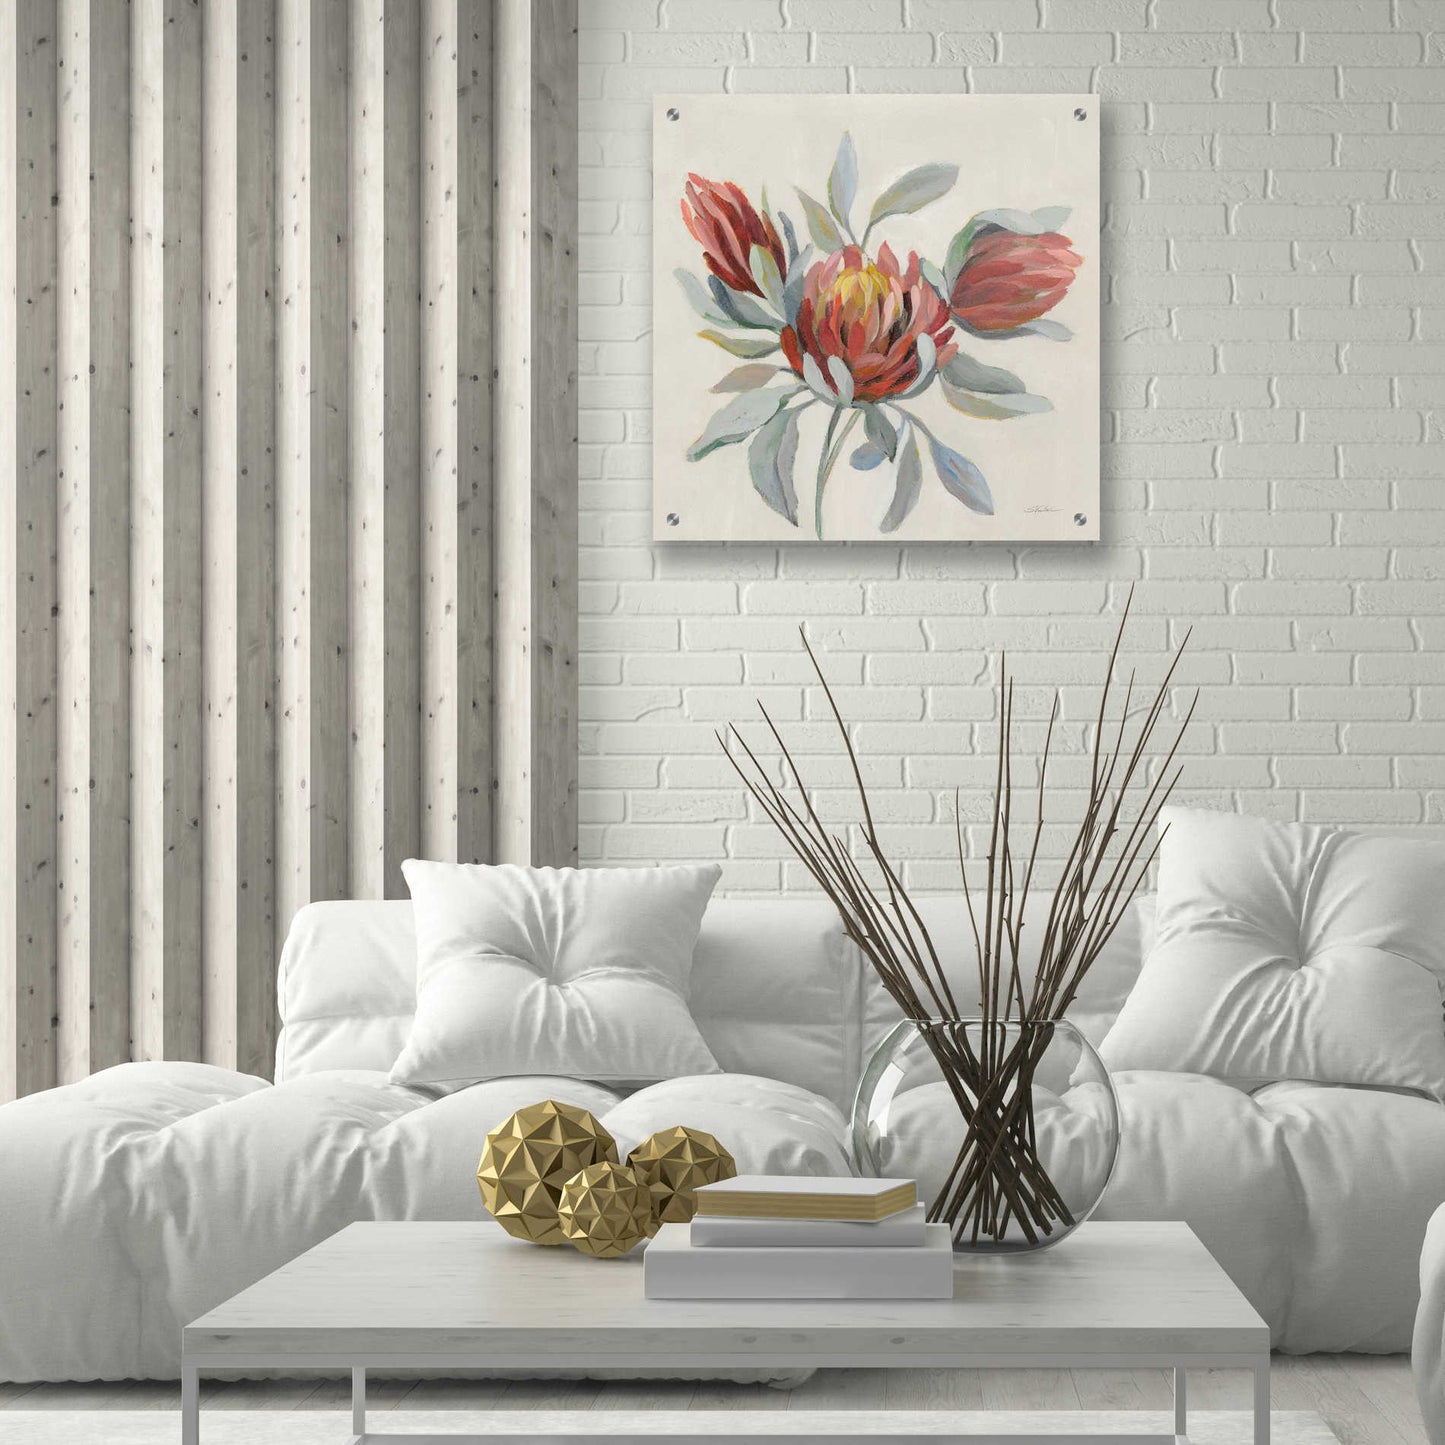 Epic Art 'Field Bloom I' by Silvia Vassileva, Acrylic Glass Wall Art,24x24